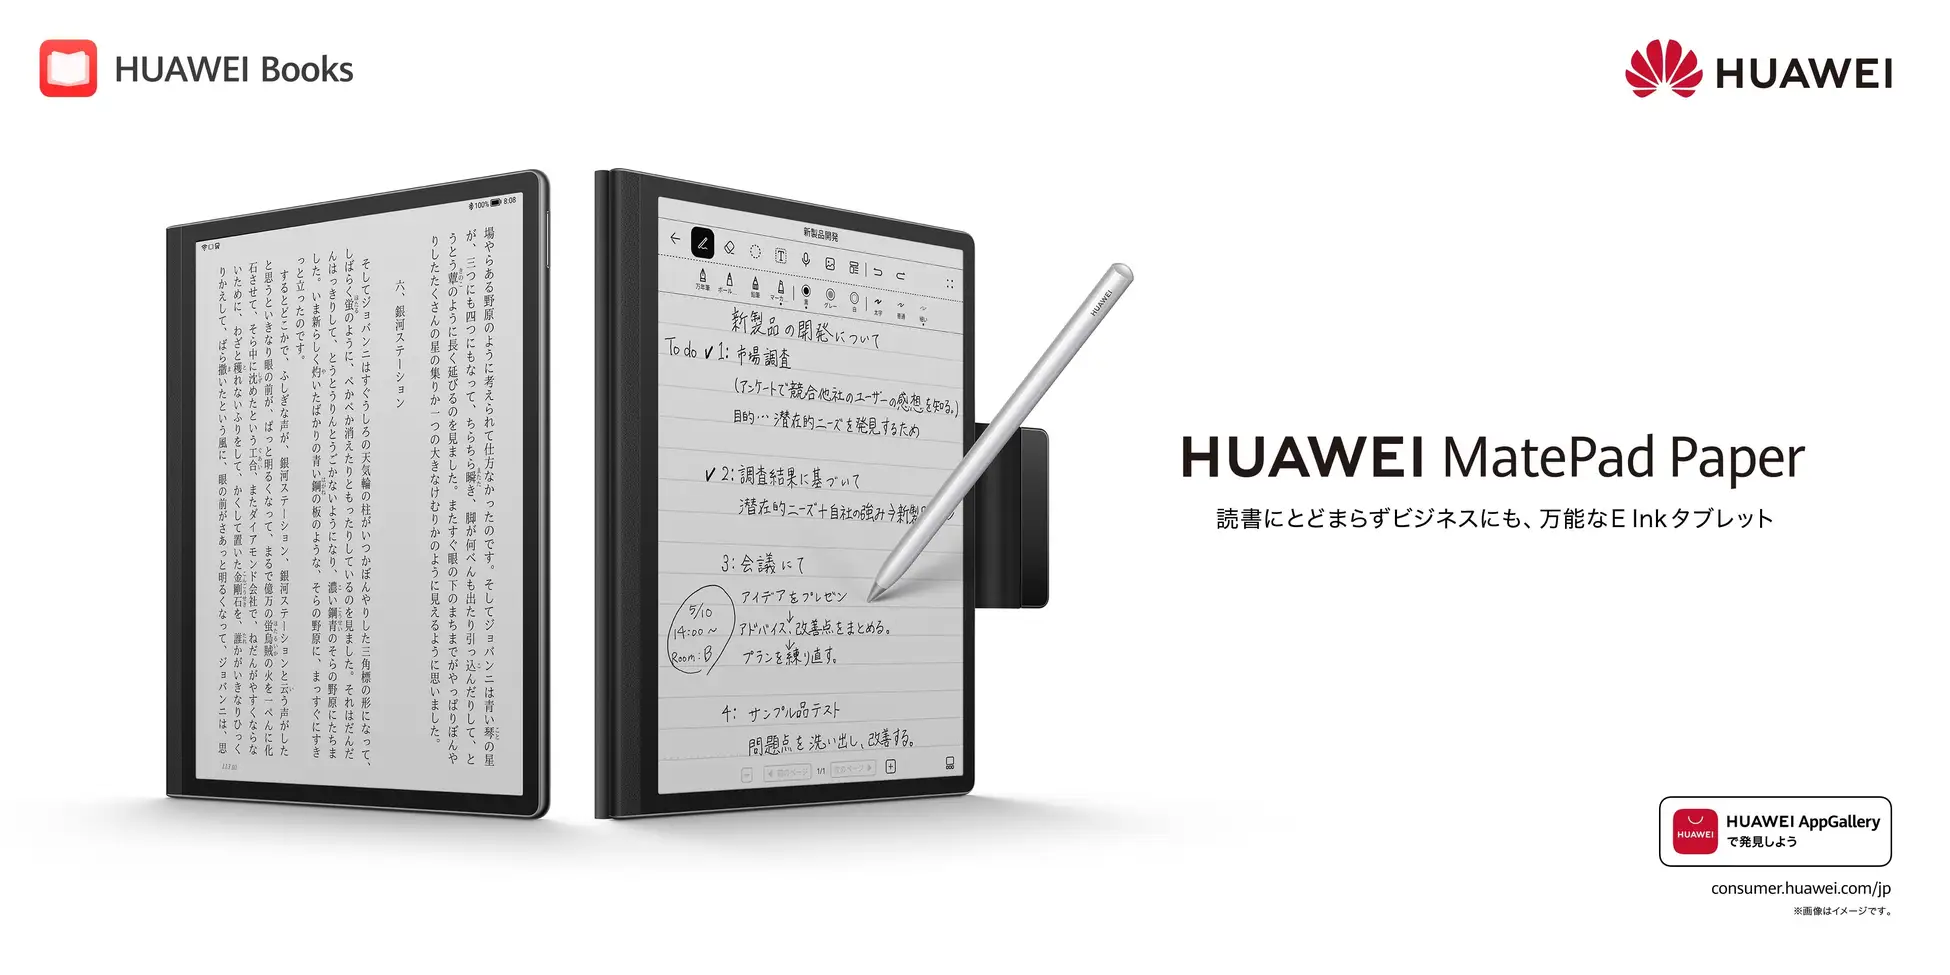 高価な購入 HUAWEI E A5サイズ 10.3インチ Paper MatePad 電子ブックリーダー